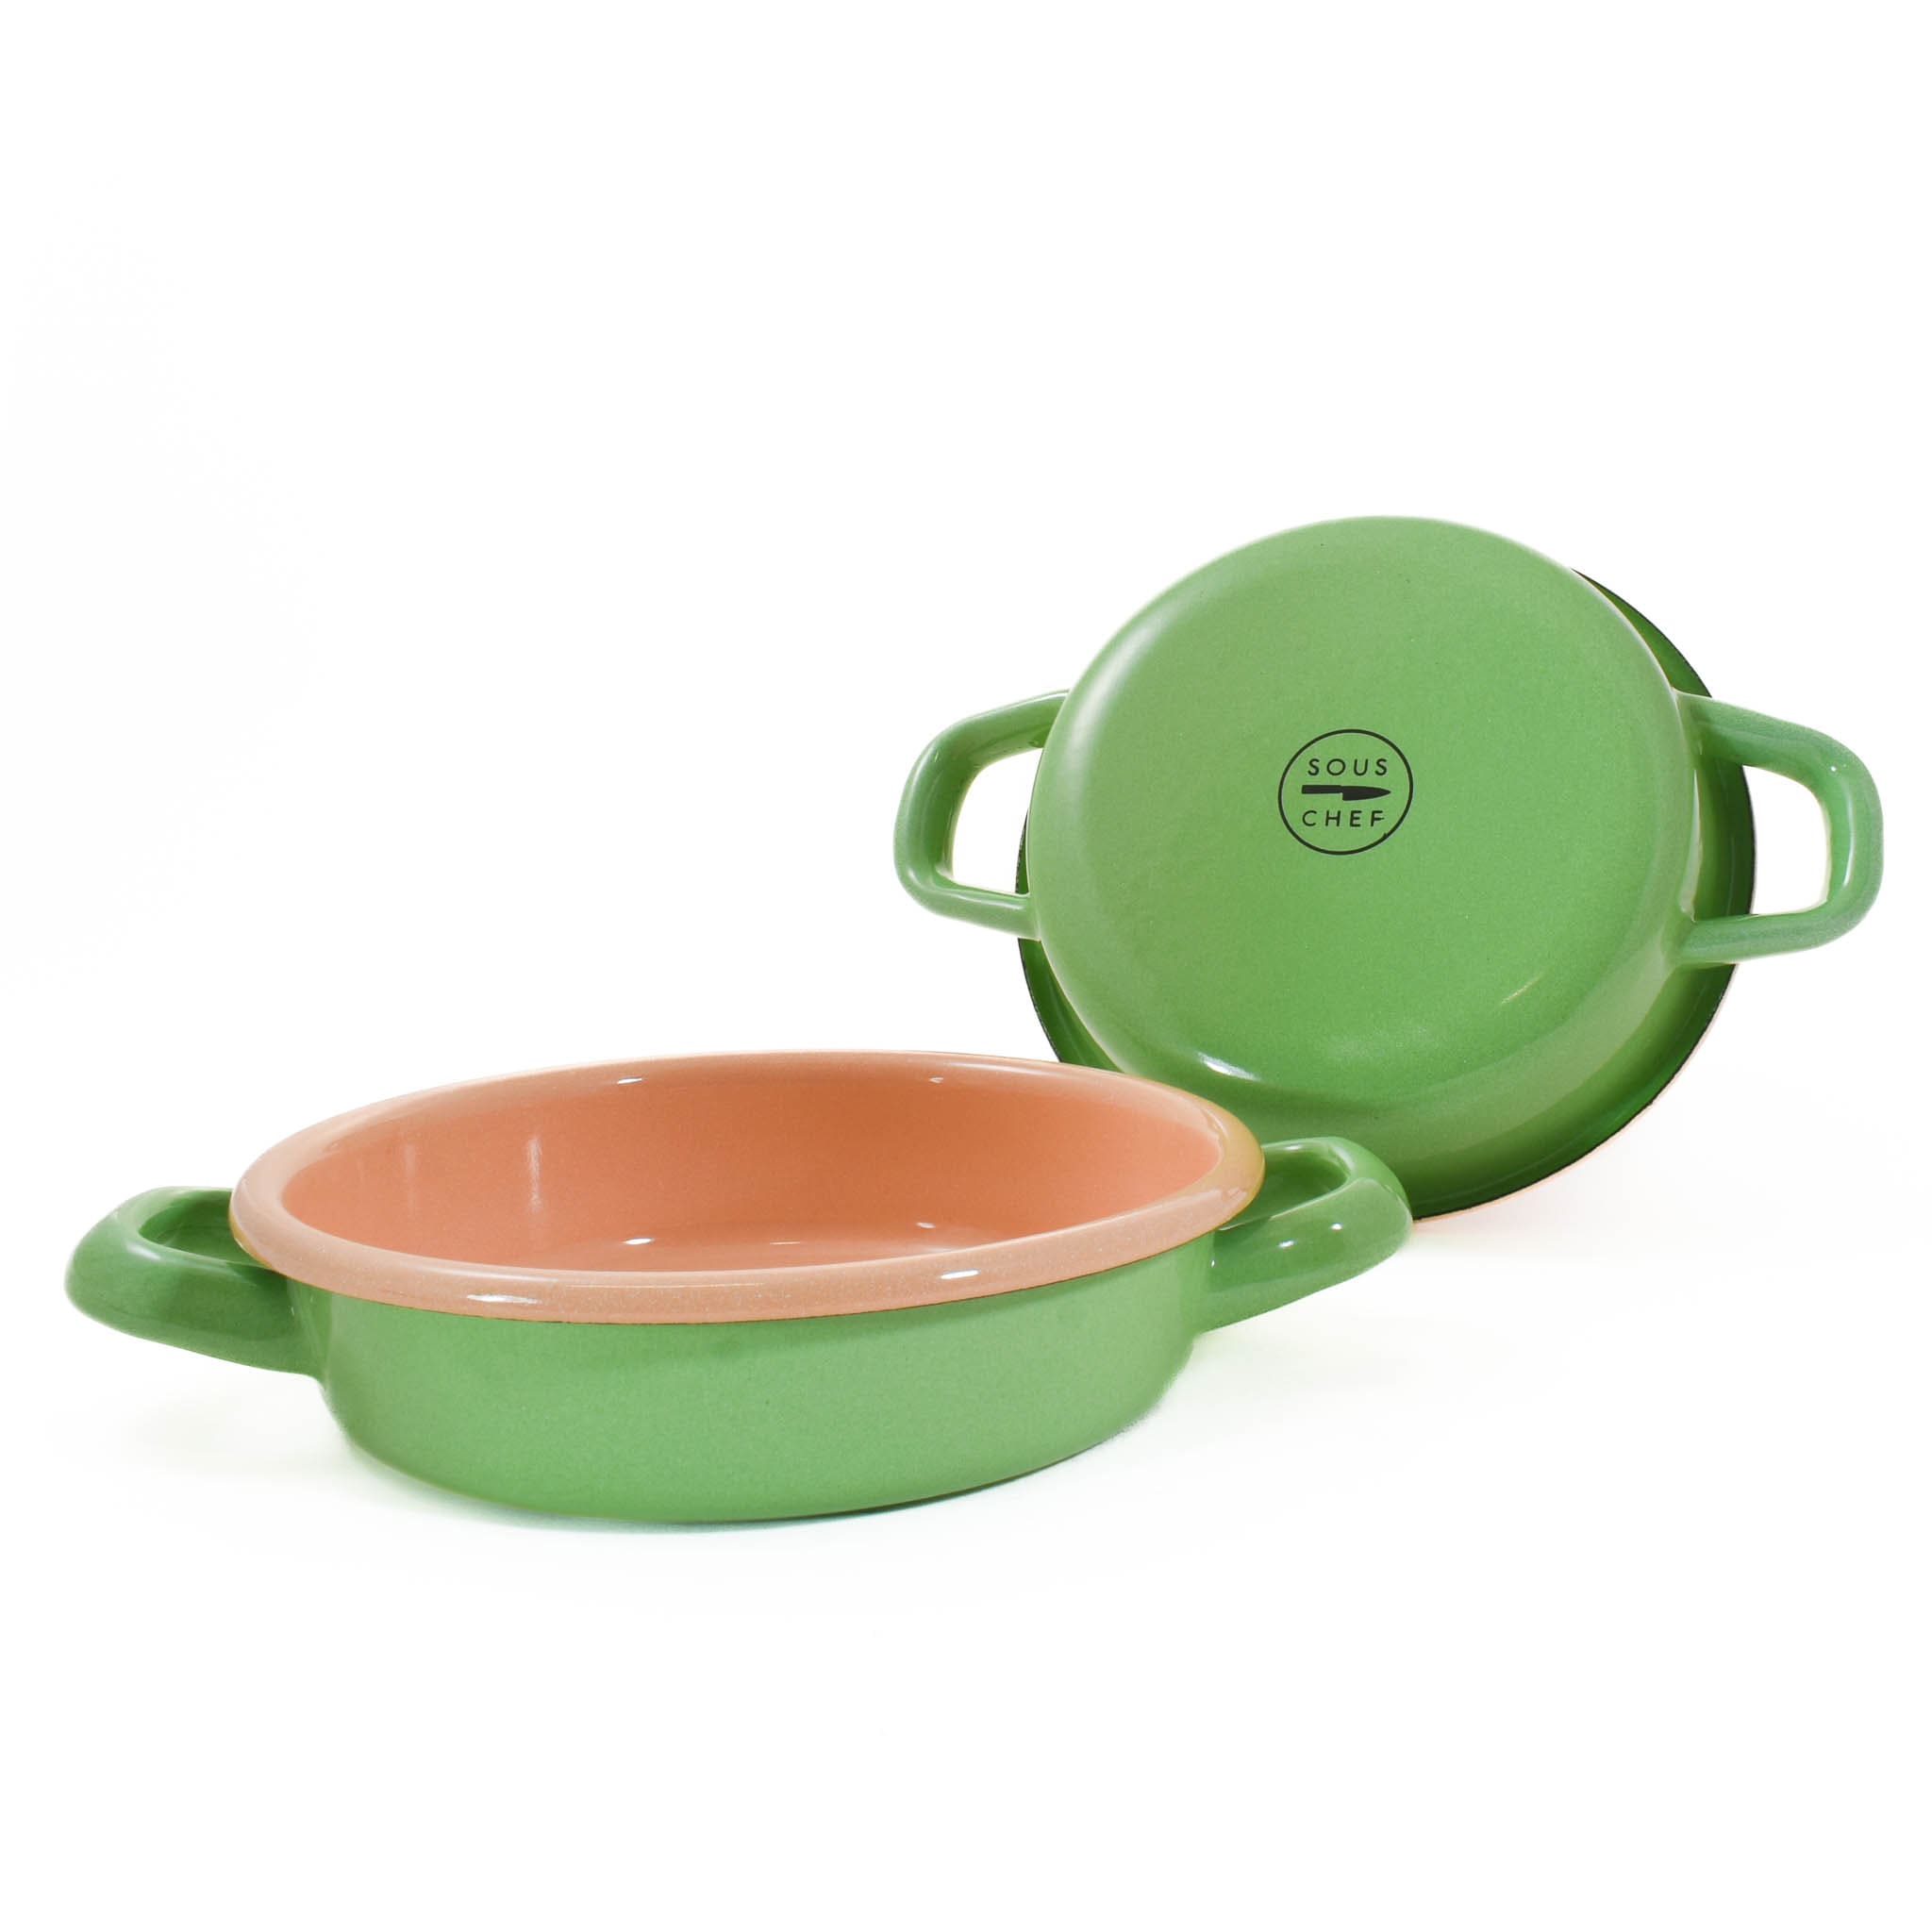 Kapka Colourblock Enamel Frying Pan, 16cm, Green & Beige